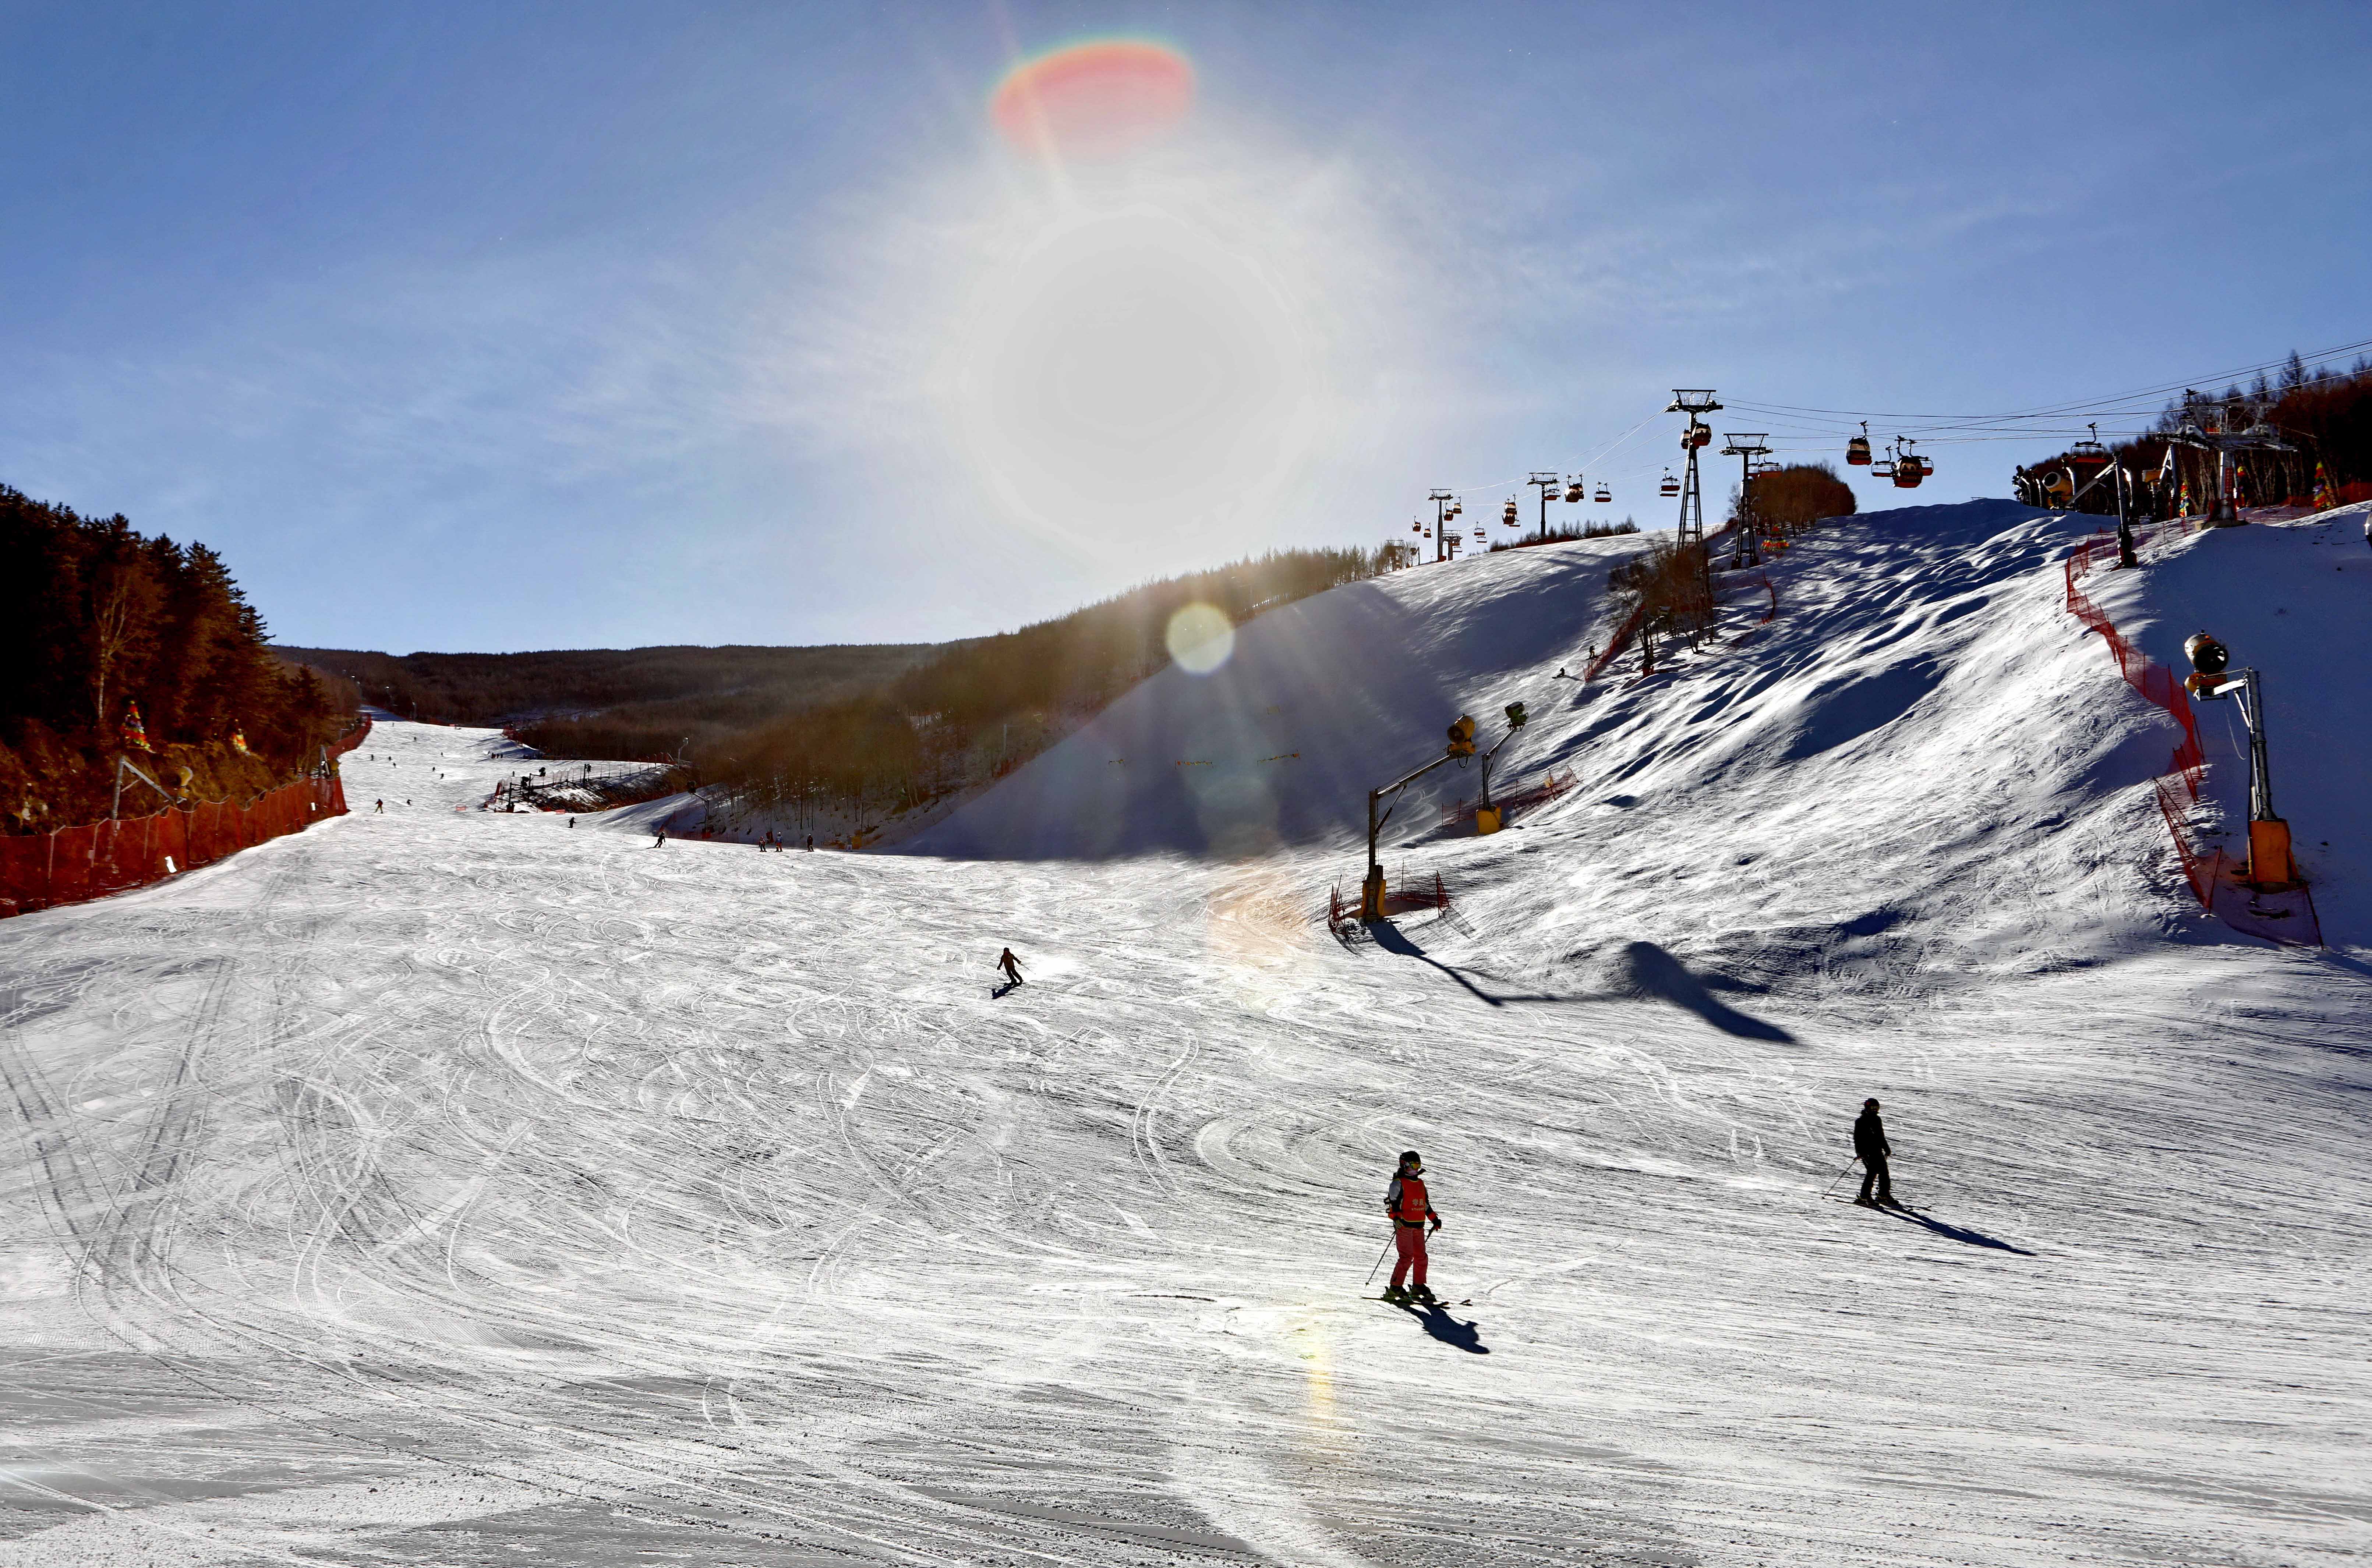 这是张家口市崇礼区云顶滑雪场(1月5日无人机拍摄)